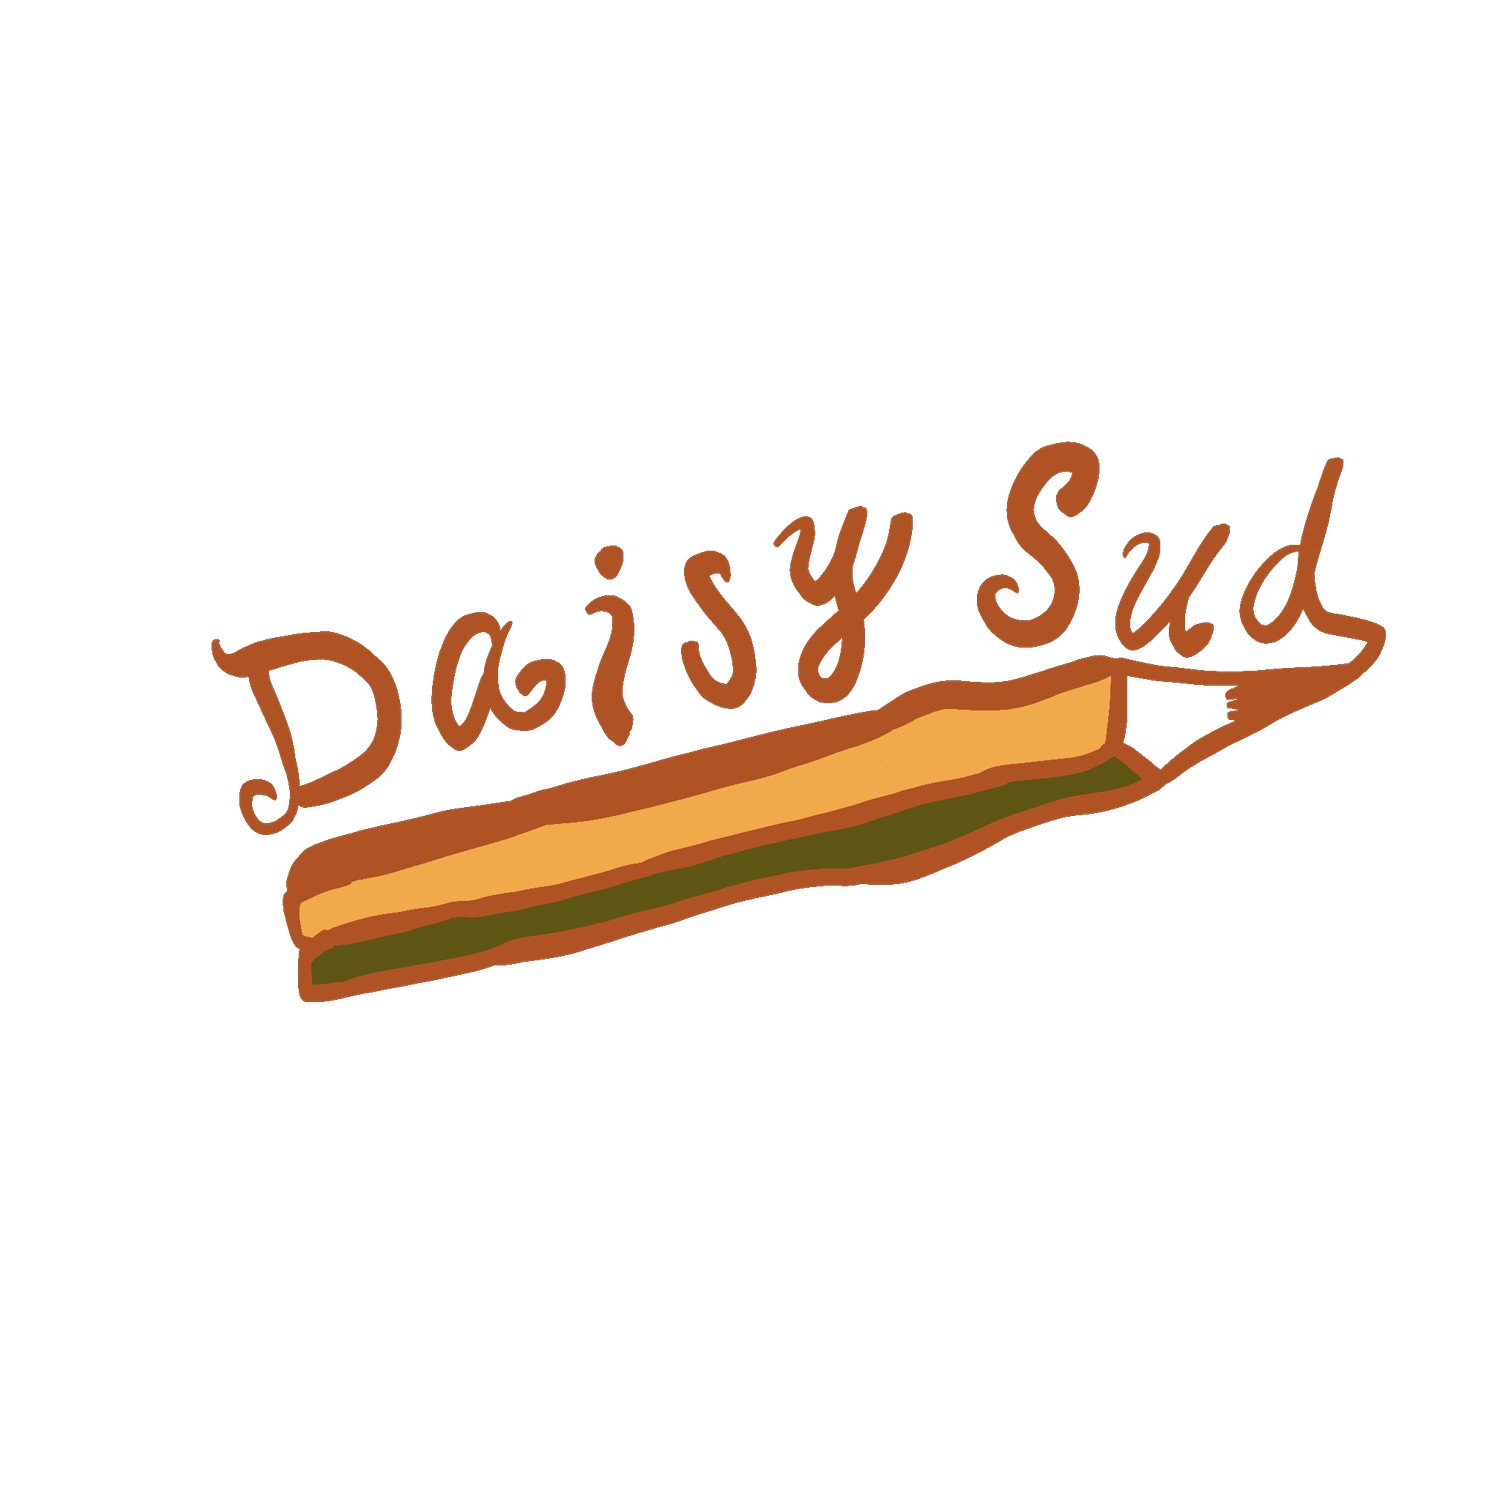 Daisy Sud